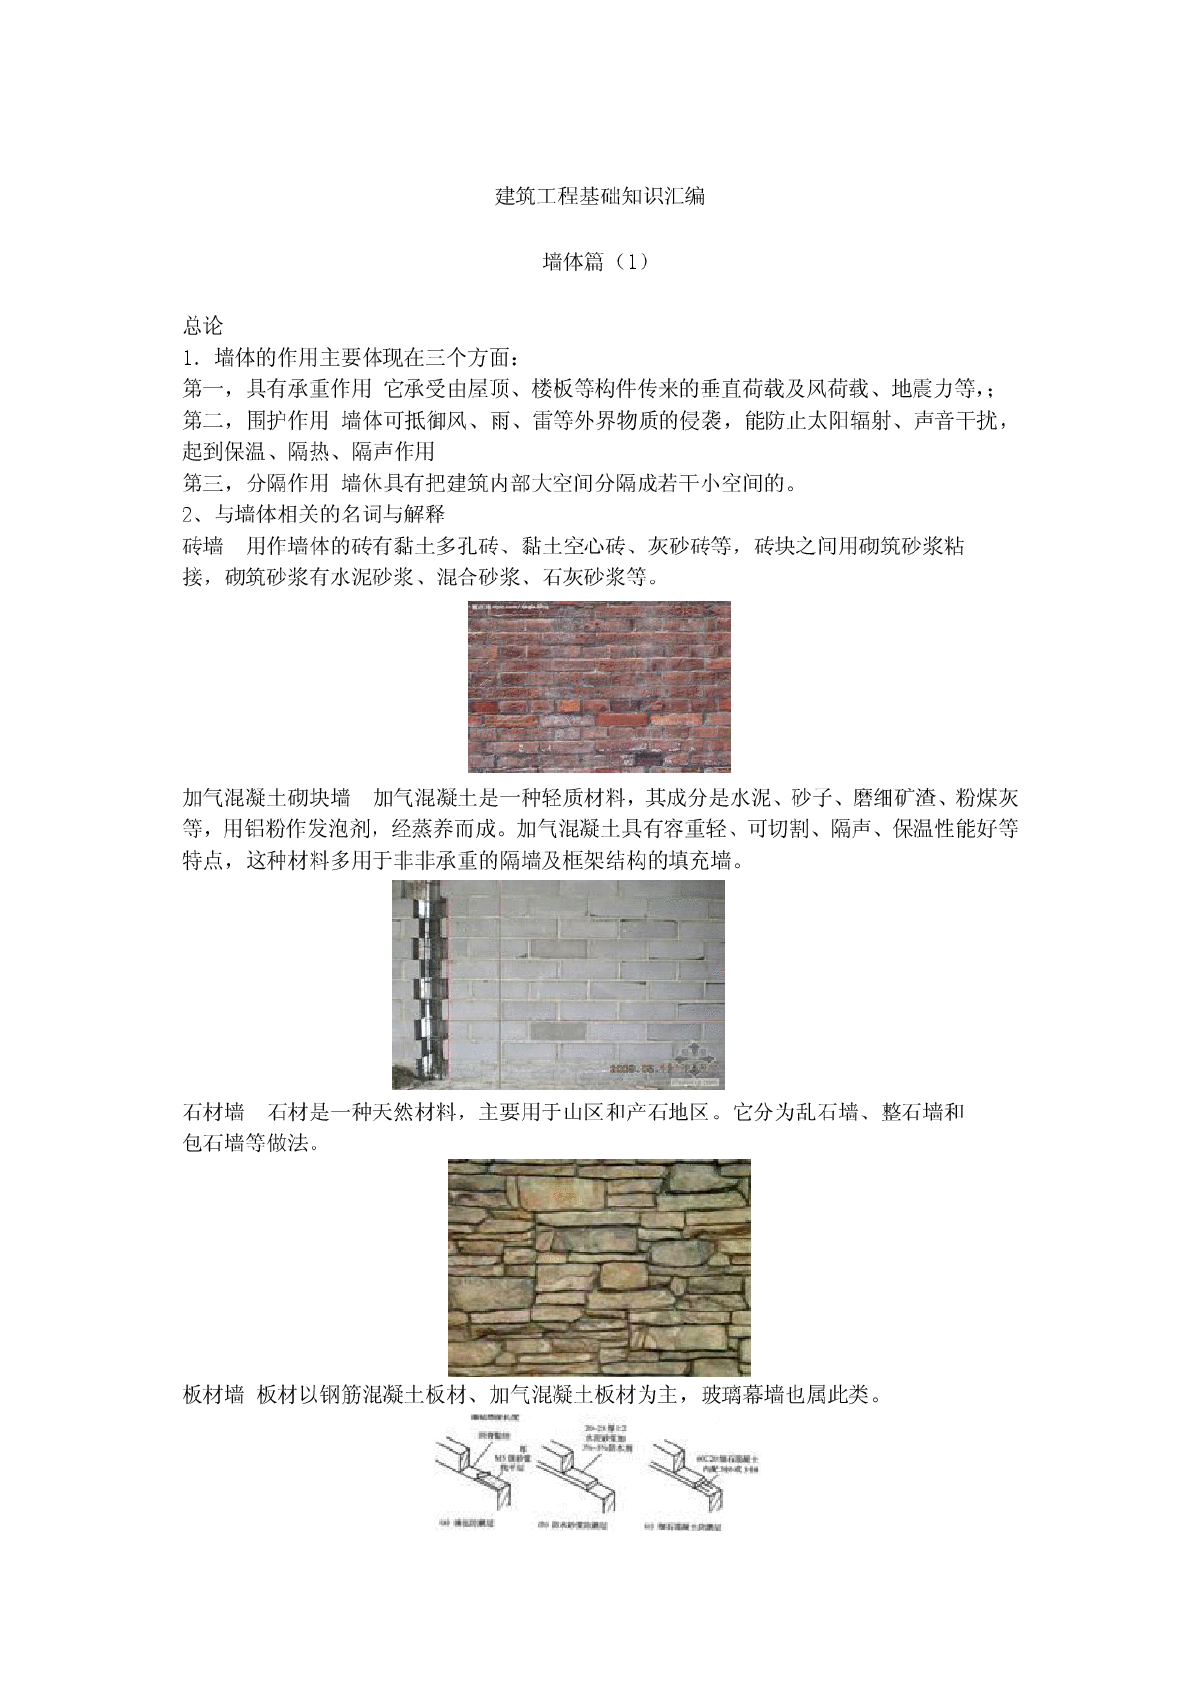 建筑工程基础知识——墙体篇1